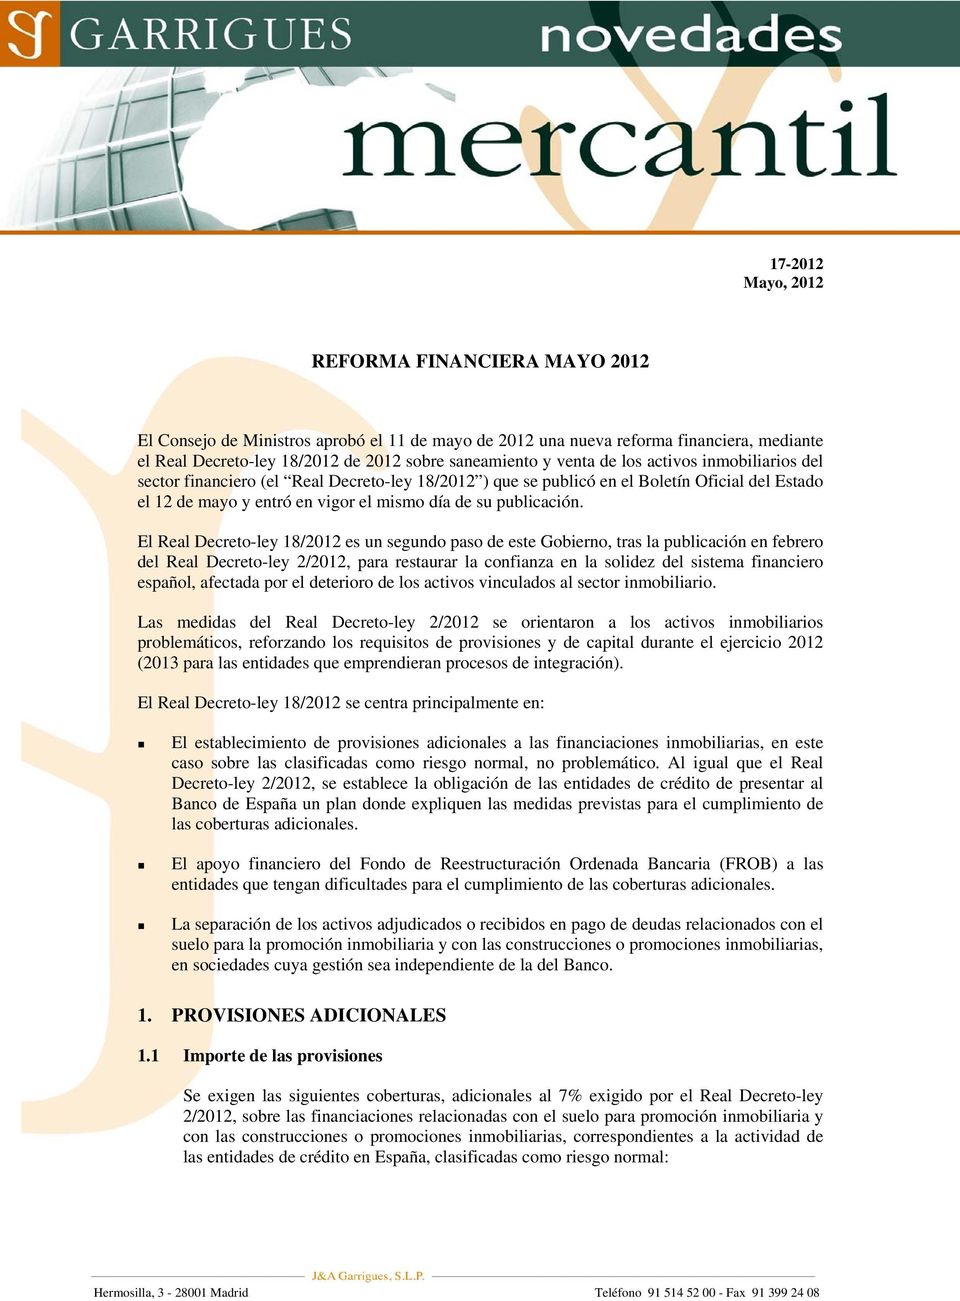 El Real Decreto-ley 18/2012 es un segundo paso de este Gobierno, tras la publicación en febrero del Real Decreto-ley 2/2012, para restaurar la confianza en la solidez del sistema financiero español,